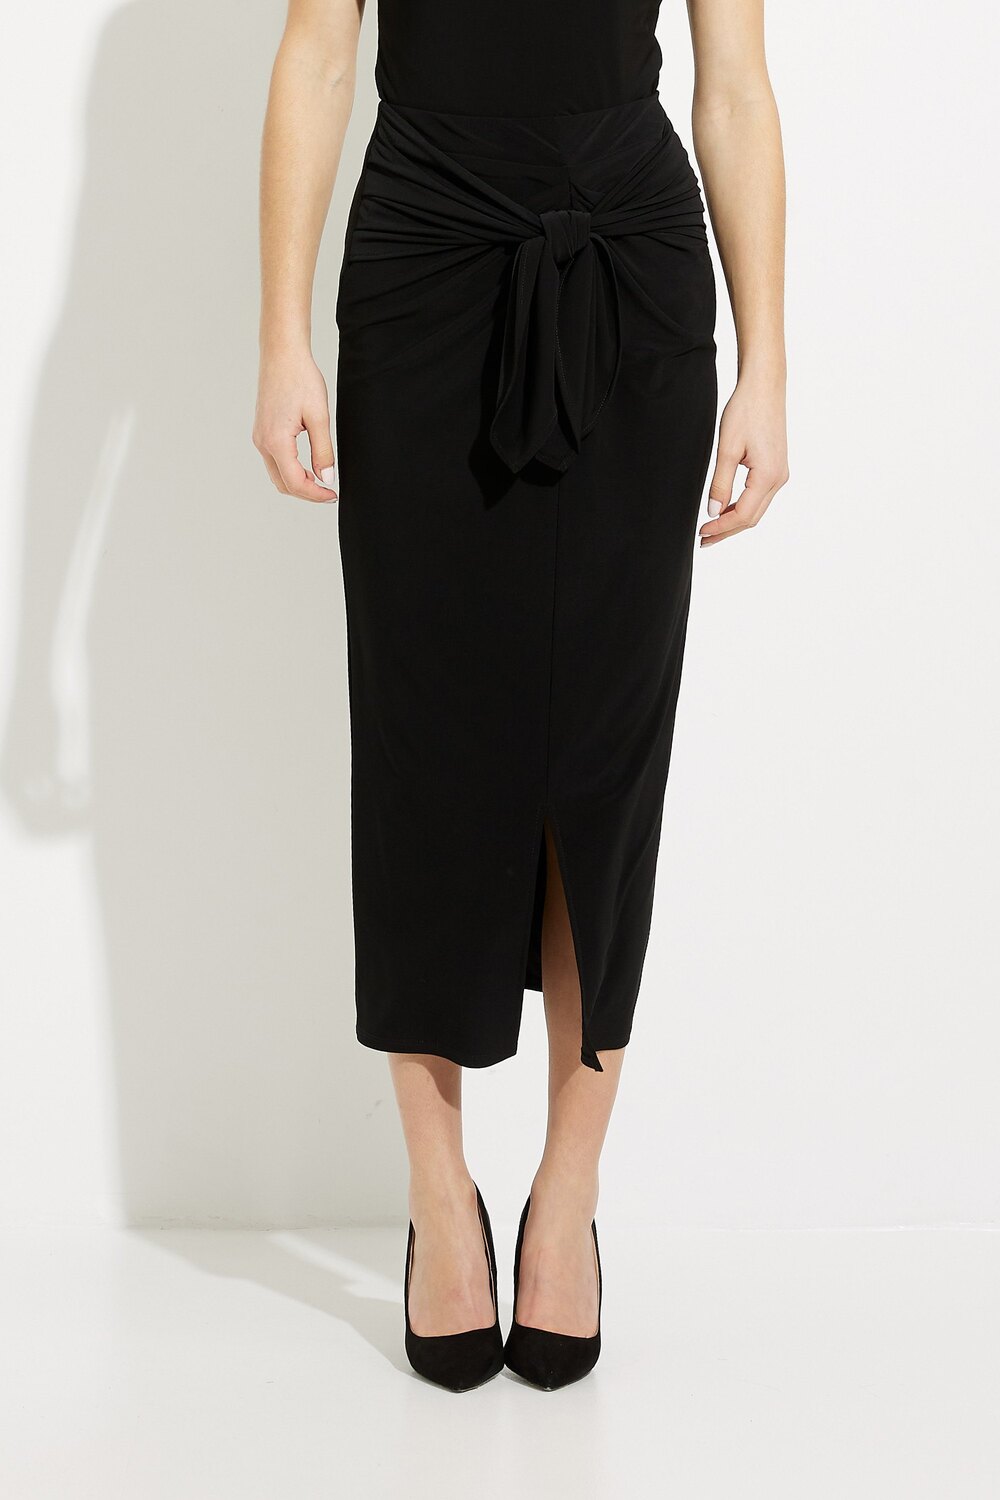 Pleated Skirt Style 231168. Black